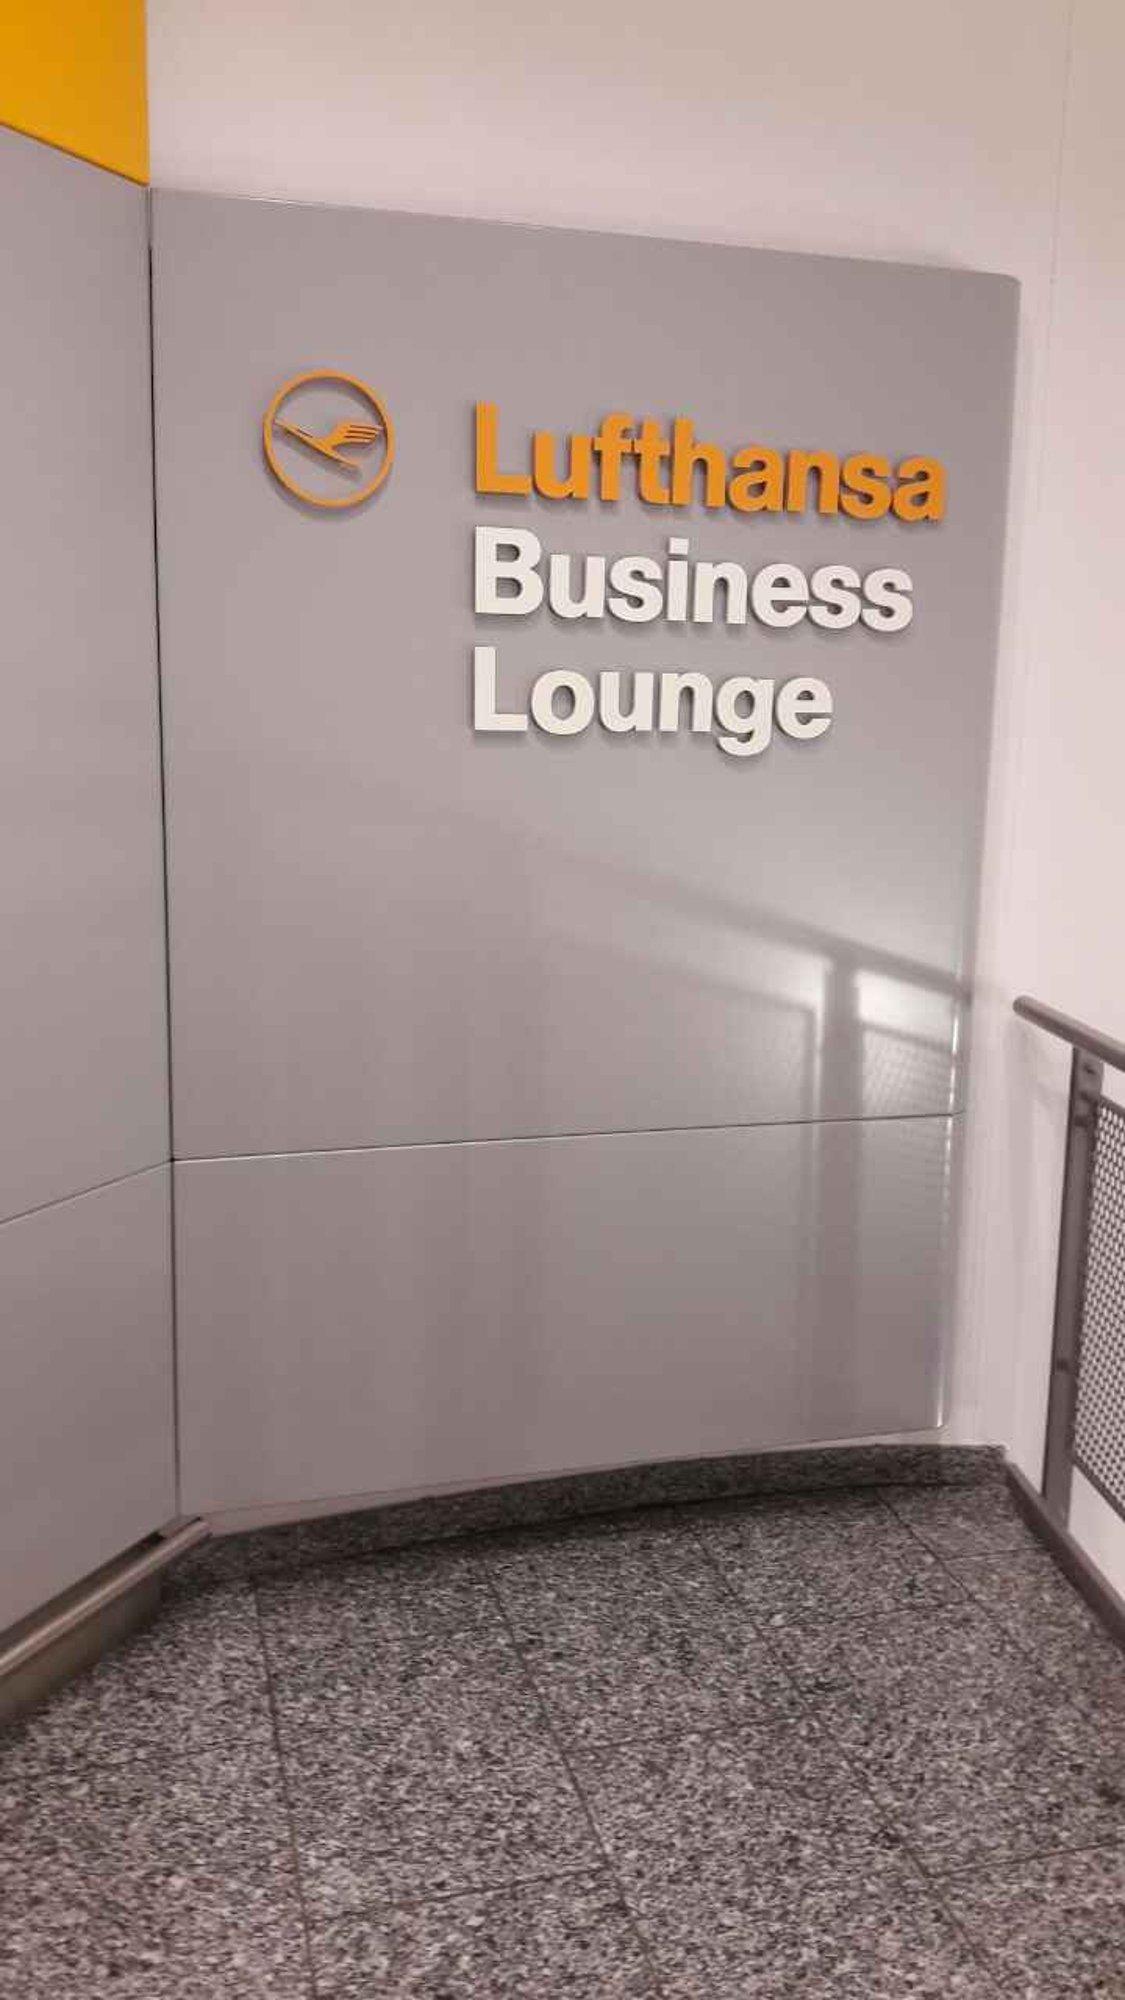 Lufthansa Business Lounge (Non-Schengen, Gates B44-B48) image 15 of 46